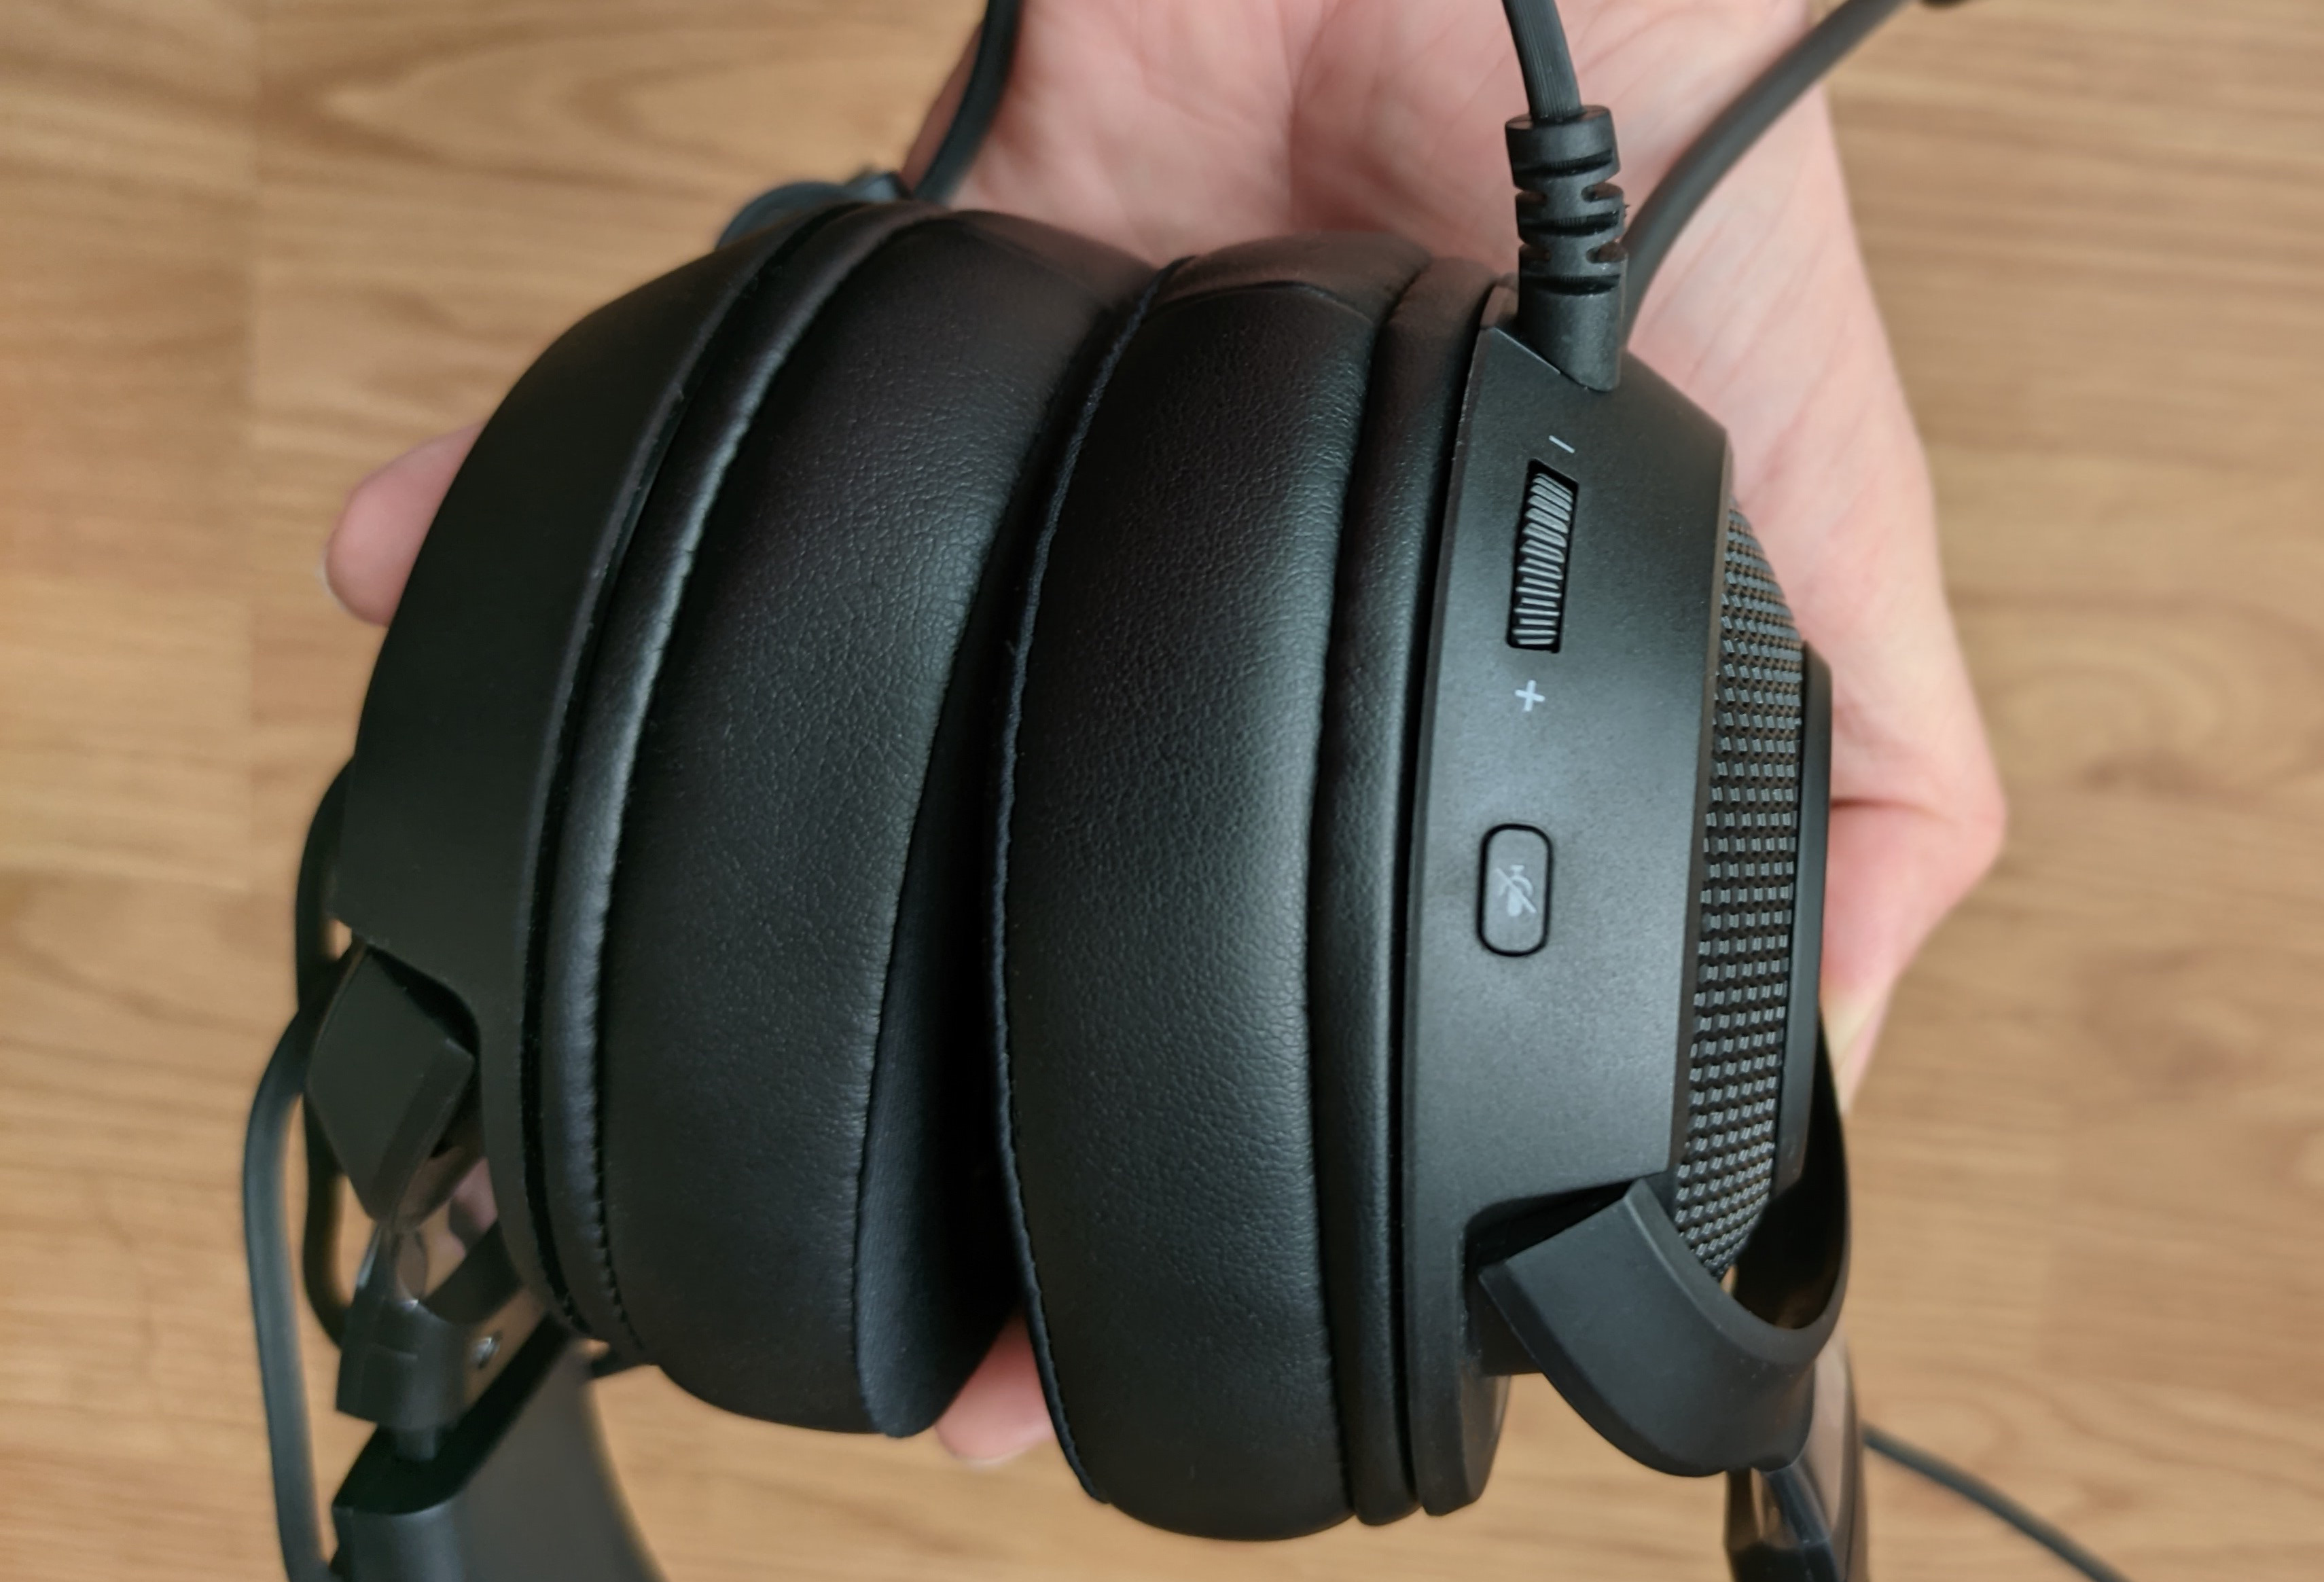 silencio Susteen Bendecir Análisis de Razer Kraken V3 X, la nueva generación del auricular económico  de Razer con sonido 7.1 surround | Hobby Consolas